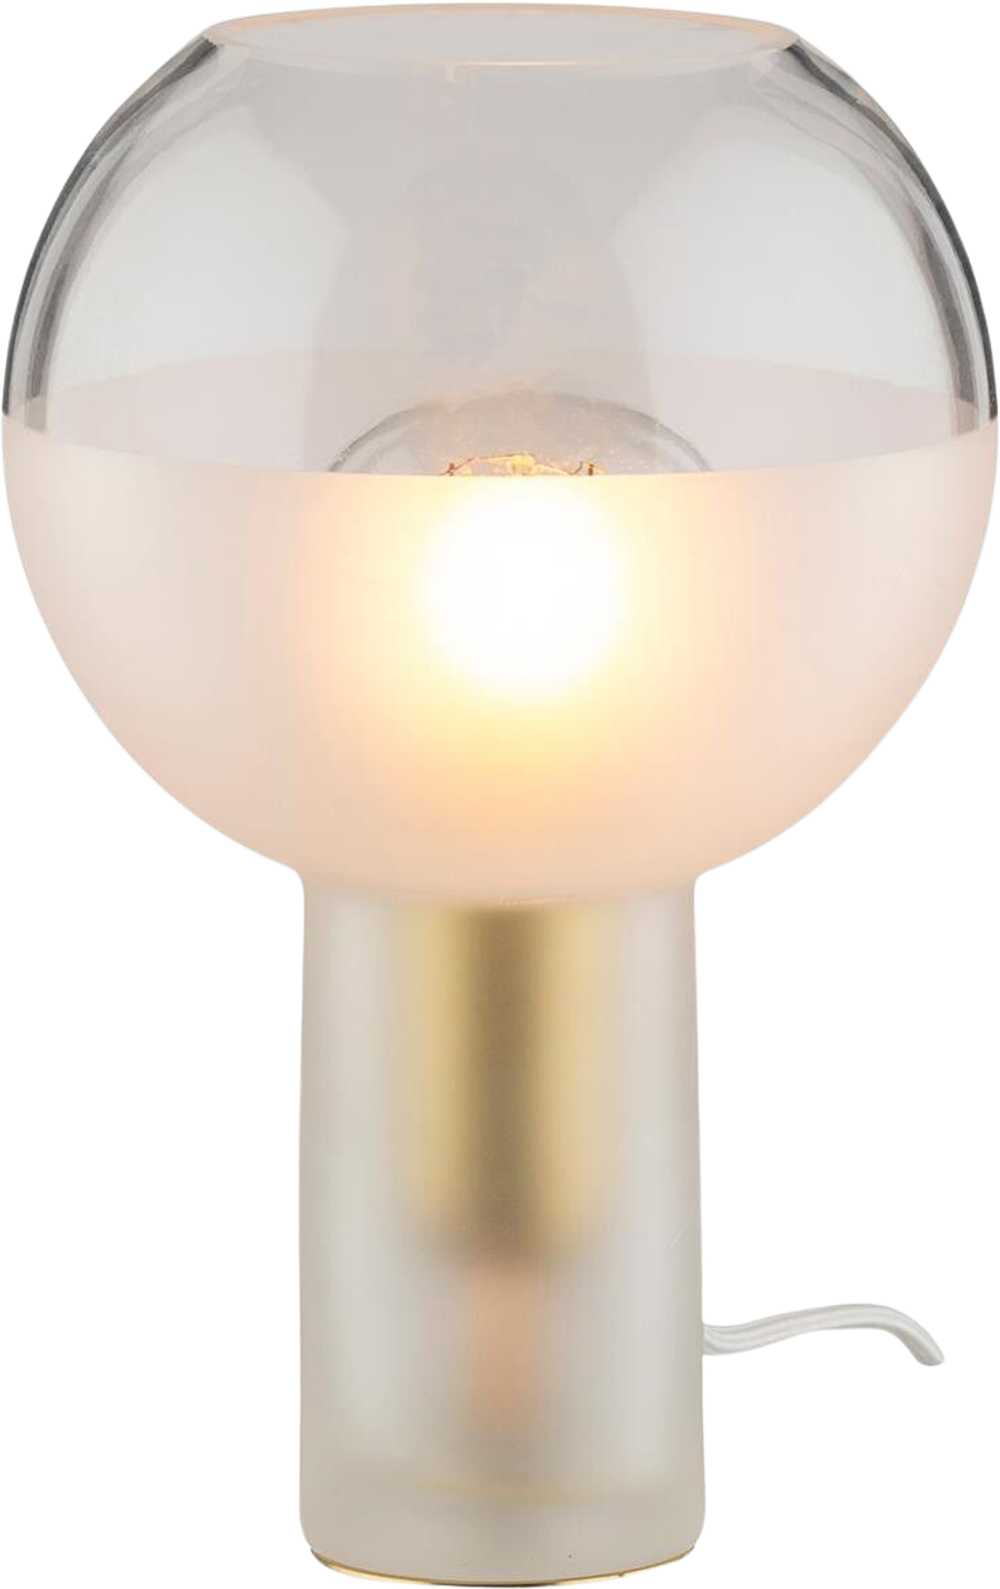 Tilbud på Torcia bordlampe (TRANSPERENT, ONESIZE) (SINNERUP) fra Sinnerup til 599 kr.